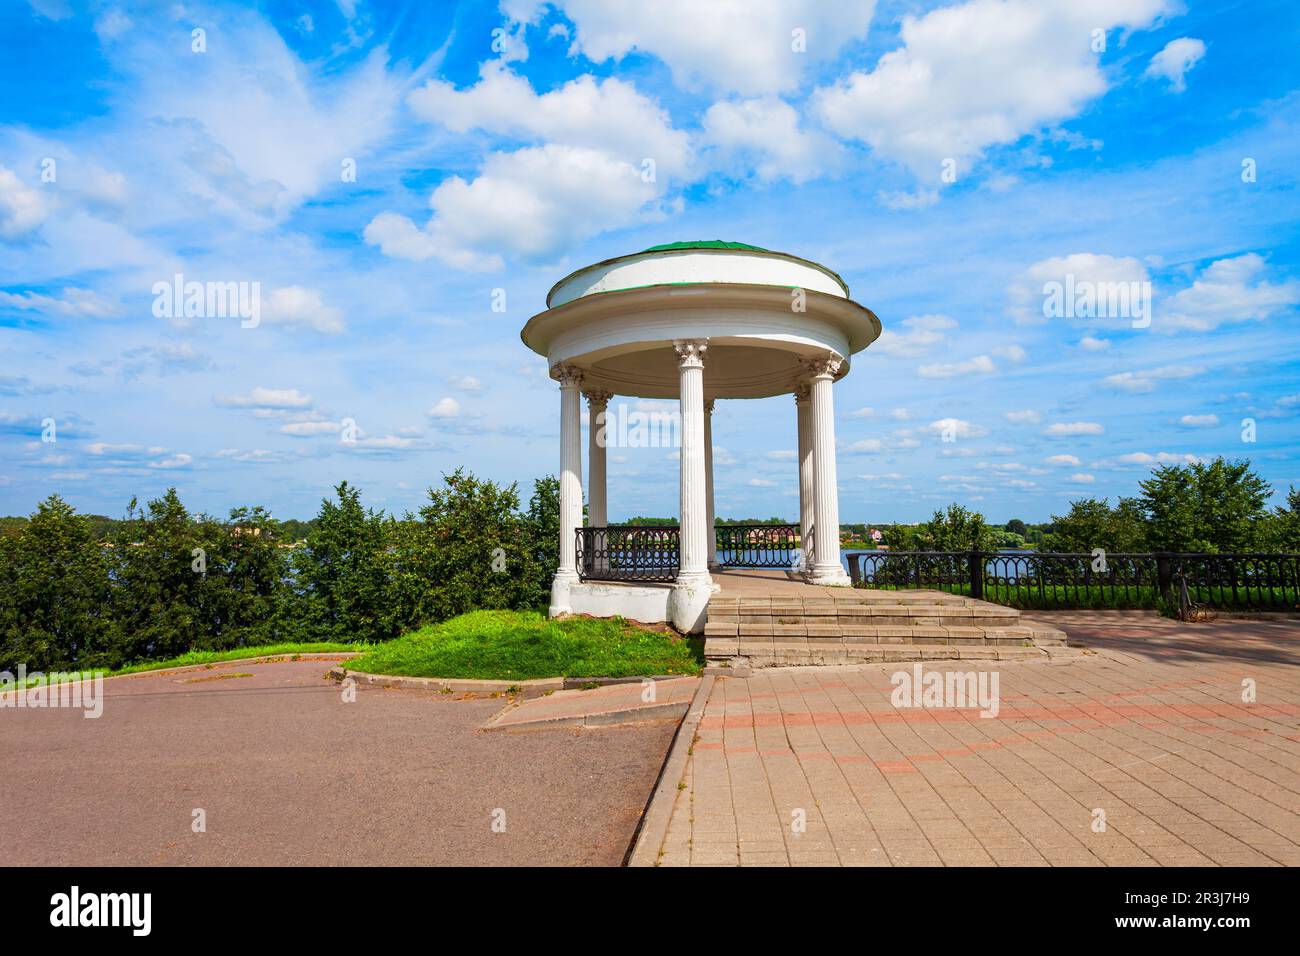 Le pavillon du quai de la Volga est une rotonde ronde ouverte, un des symboles de la ville de Yaroslavl, l'anneau d'or de Russie Banque D'Images